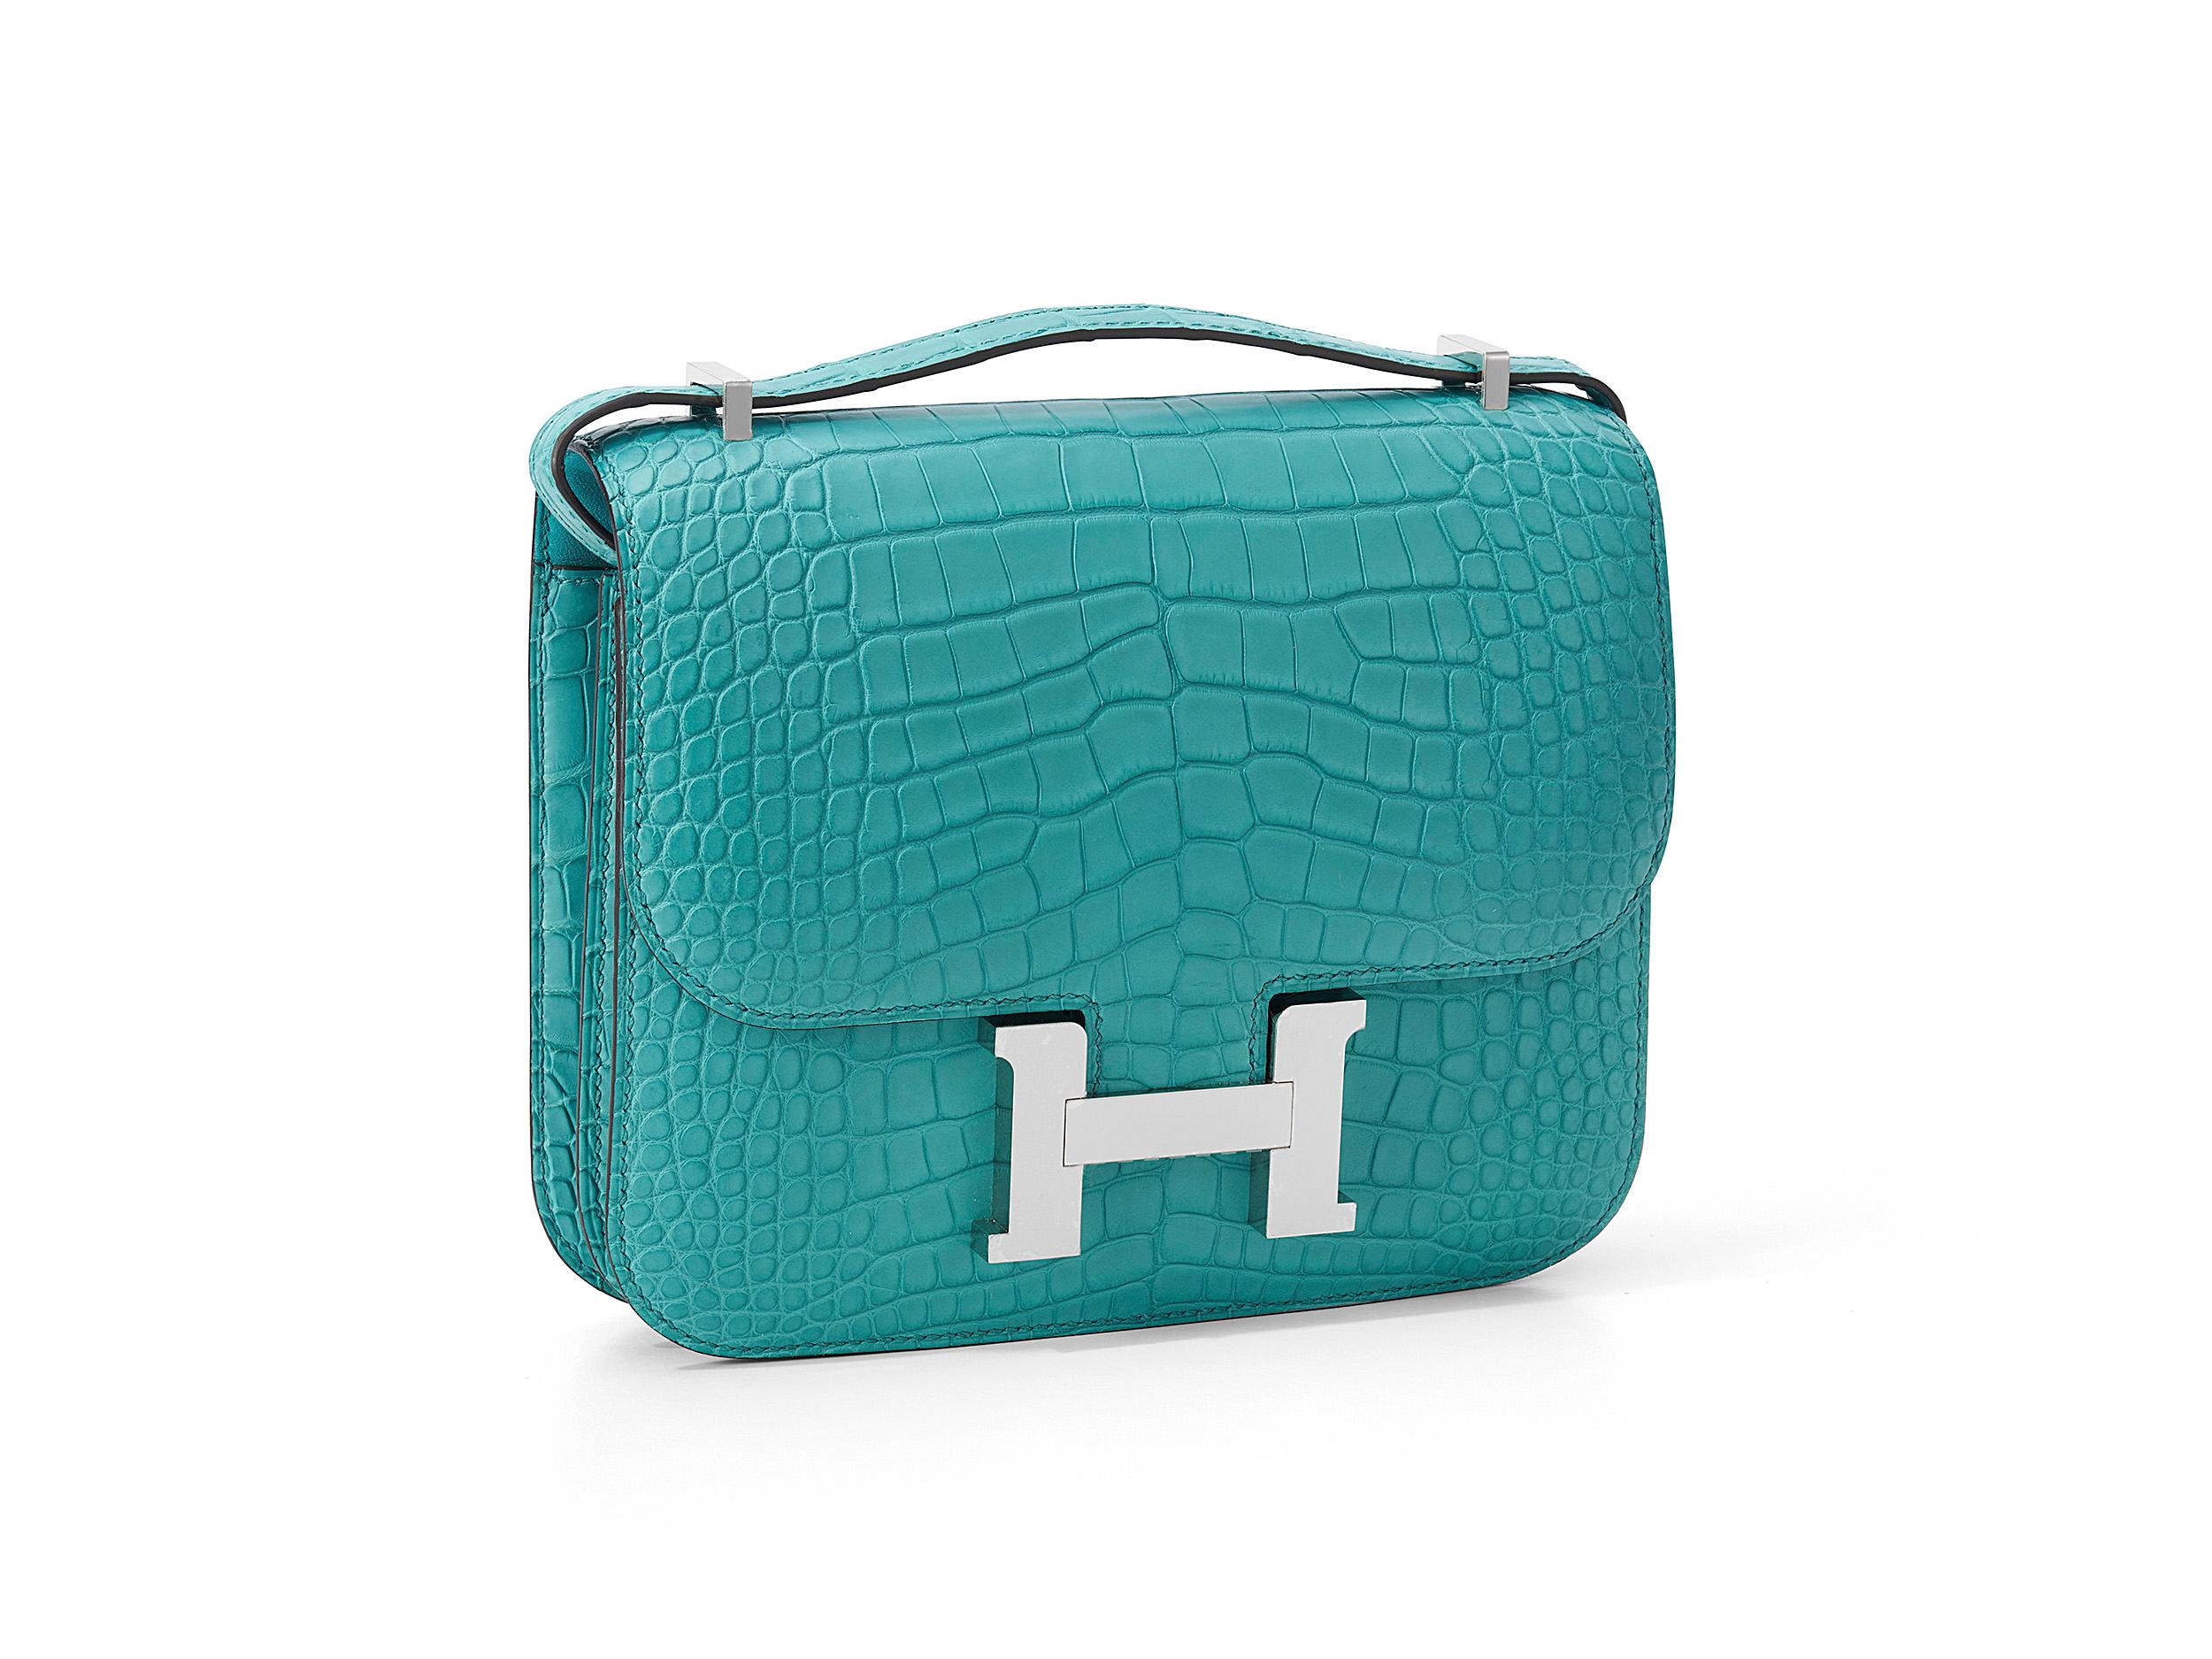 Hermès Constance Mini 18 aus blauem Paon und mattem Alligatorleder mit Palladiumbeschlägen. Die Tasche ist ungetragen und kommt als komplettes Set inklusive der Originalquittung und Cites. 
Stempel Y (2020) 

